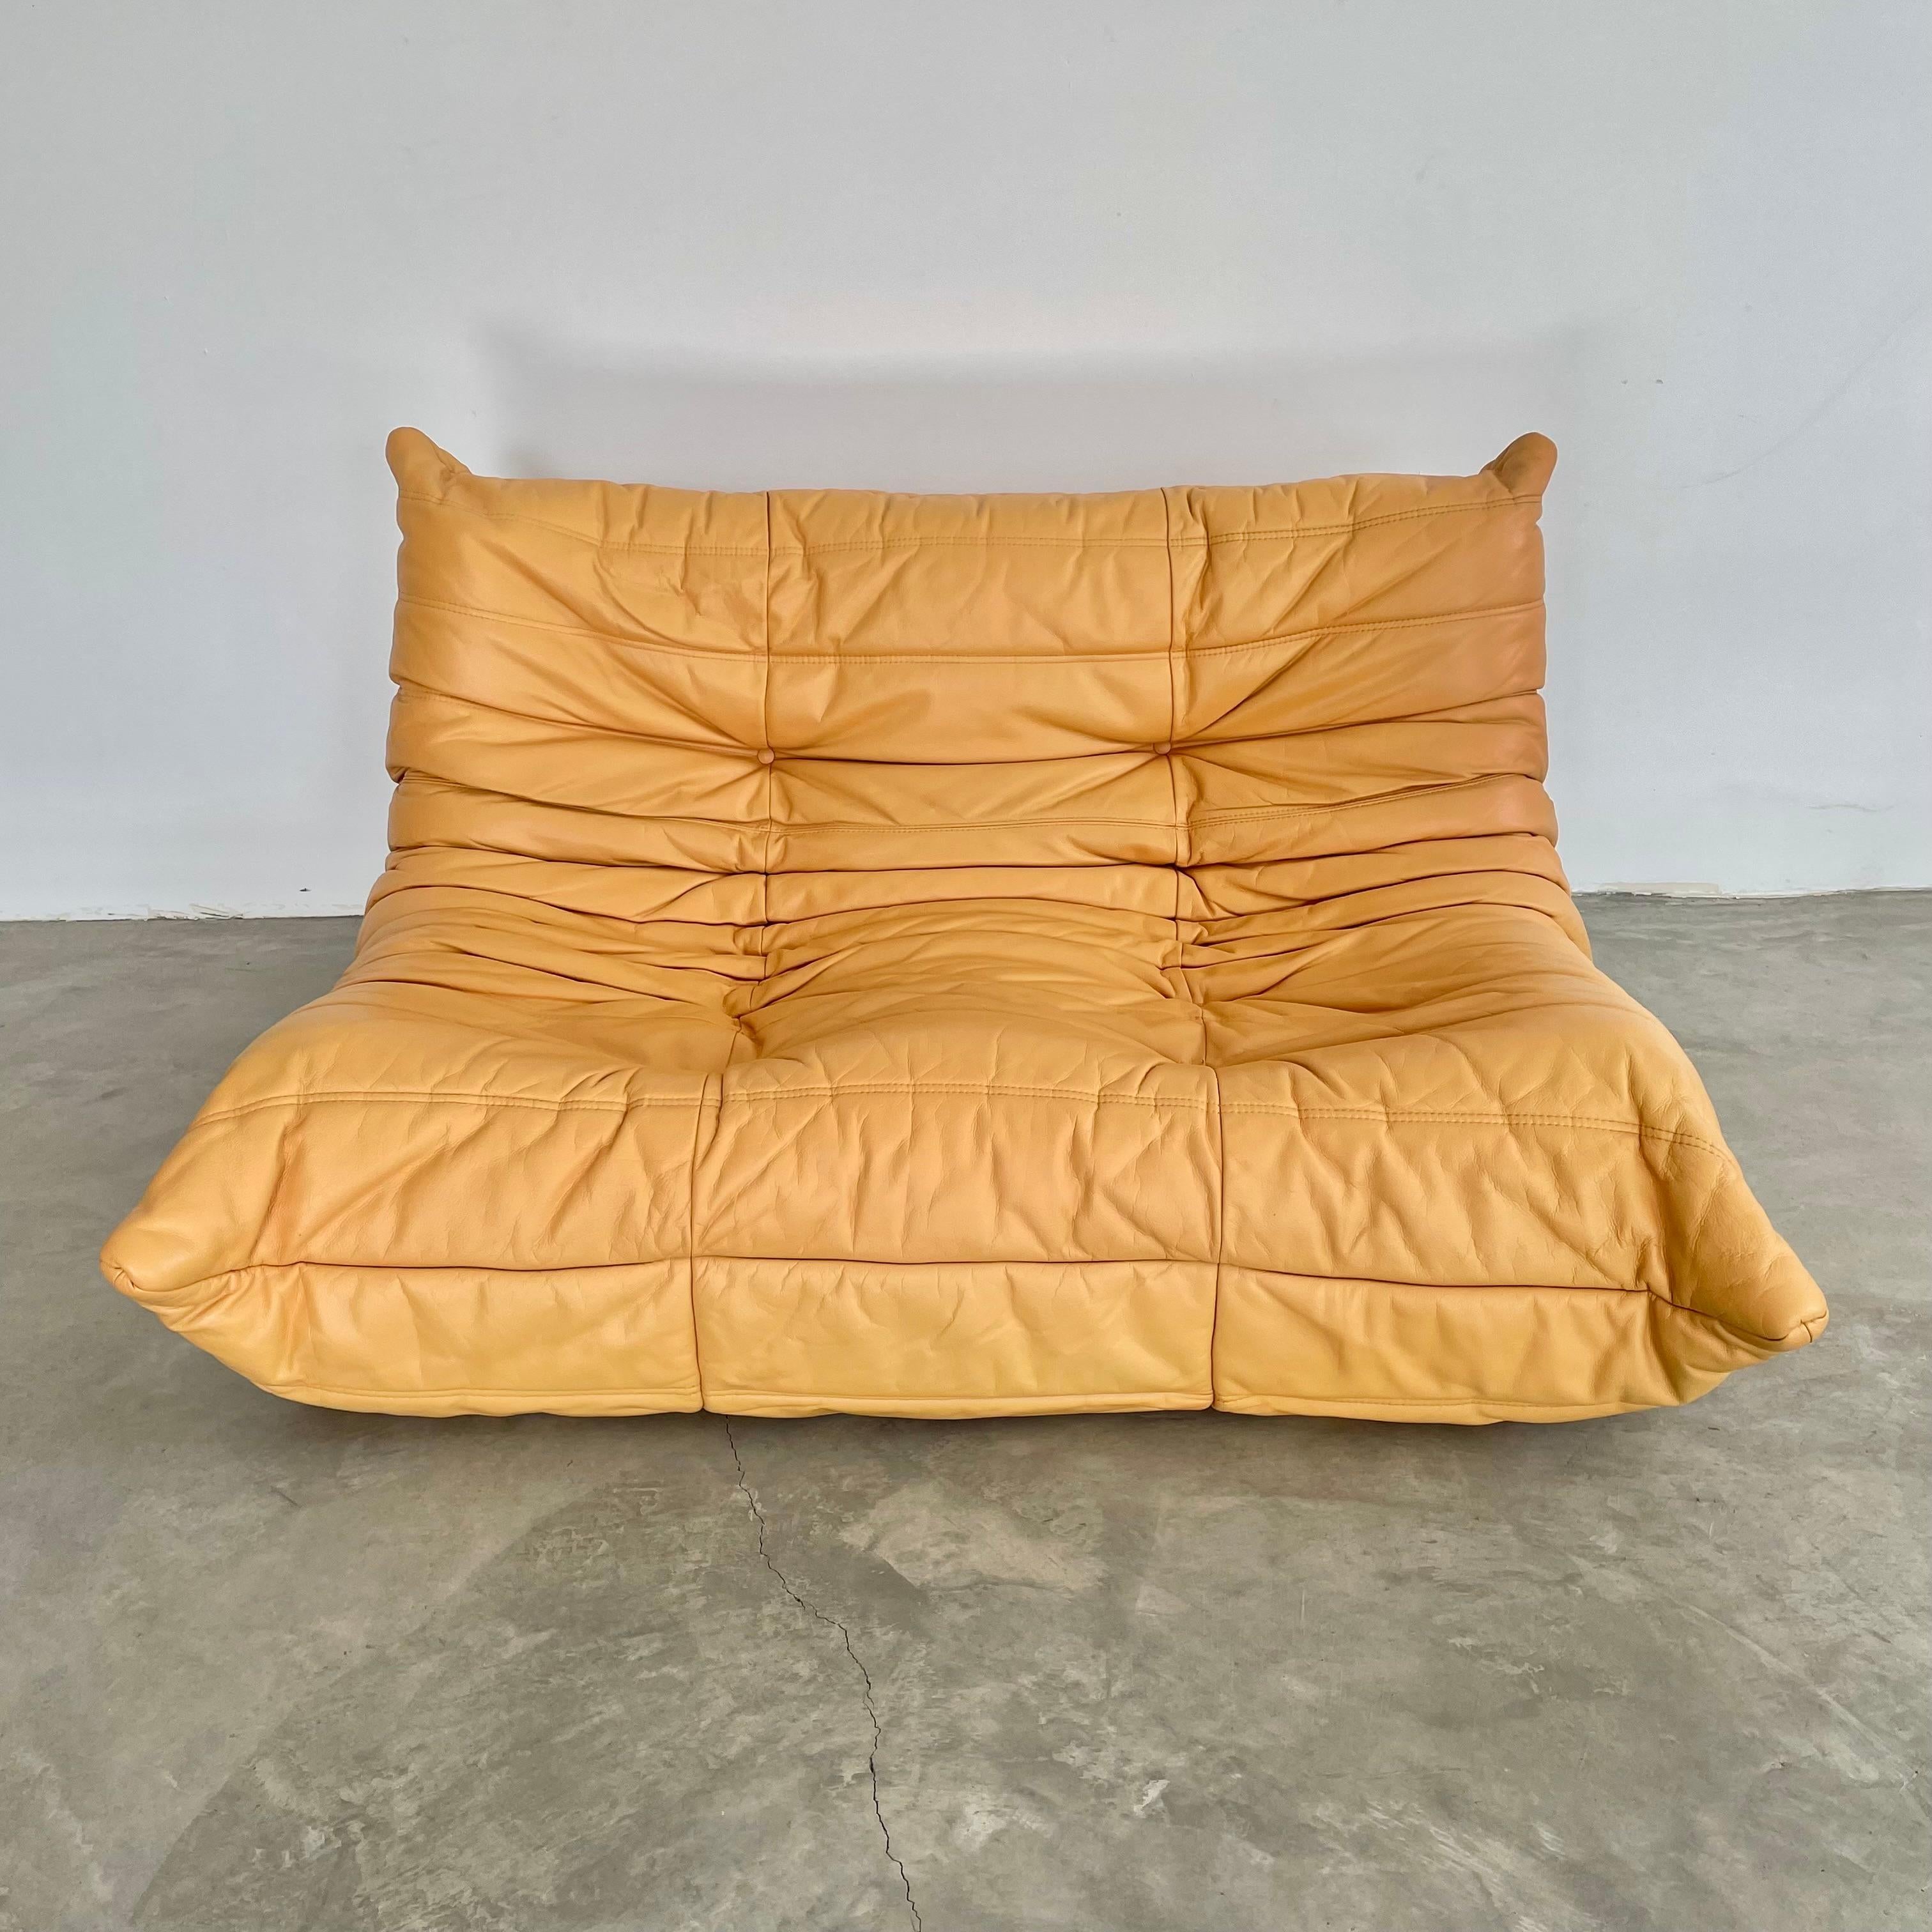 Klassisches französisches Zweisitzer-Sofa Togo von Michel Ducaroy für die Luxusmarke Ligne Roset. Ursprünglich in den 1970er Jahren entworfen, ist das ikonische togo Sofa heute ein Designklassiker. Dieses Sofa wird in seinem originalen gelben